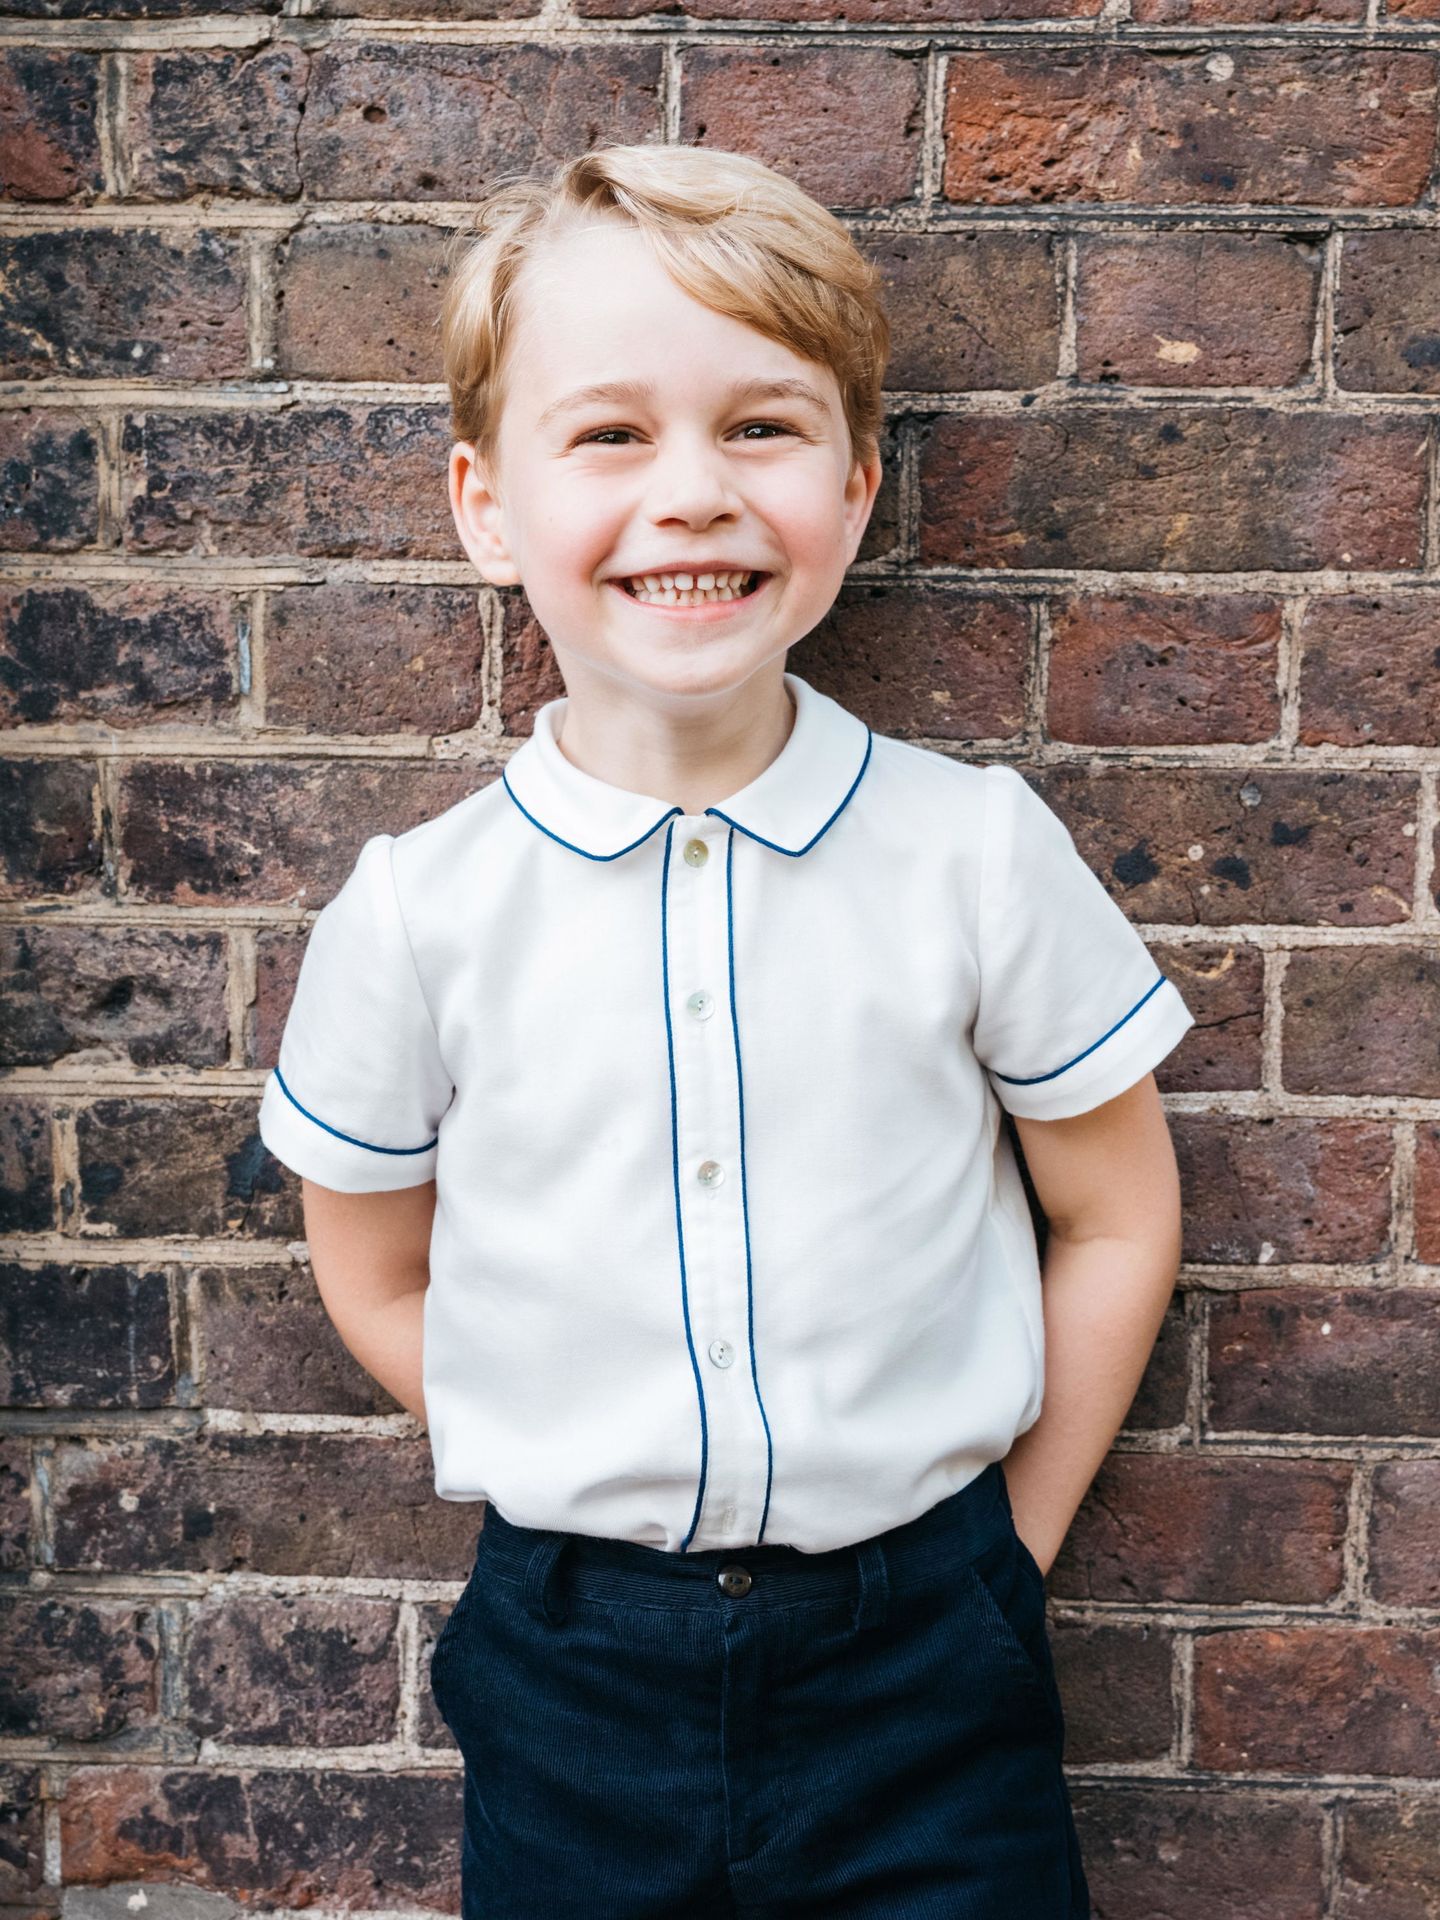 Fotografía oficial del príncipe George por su quinto cumpleaños. (EFE)